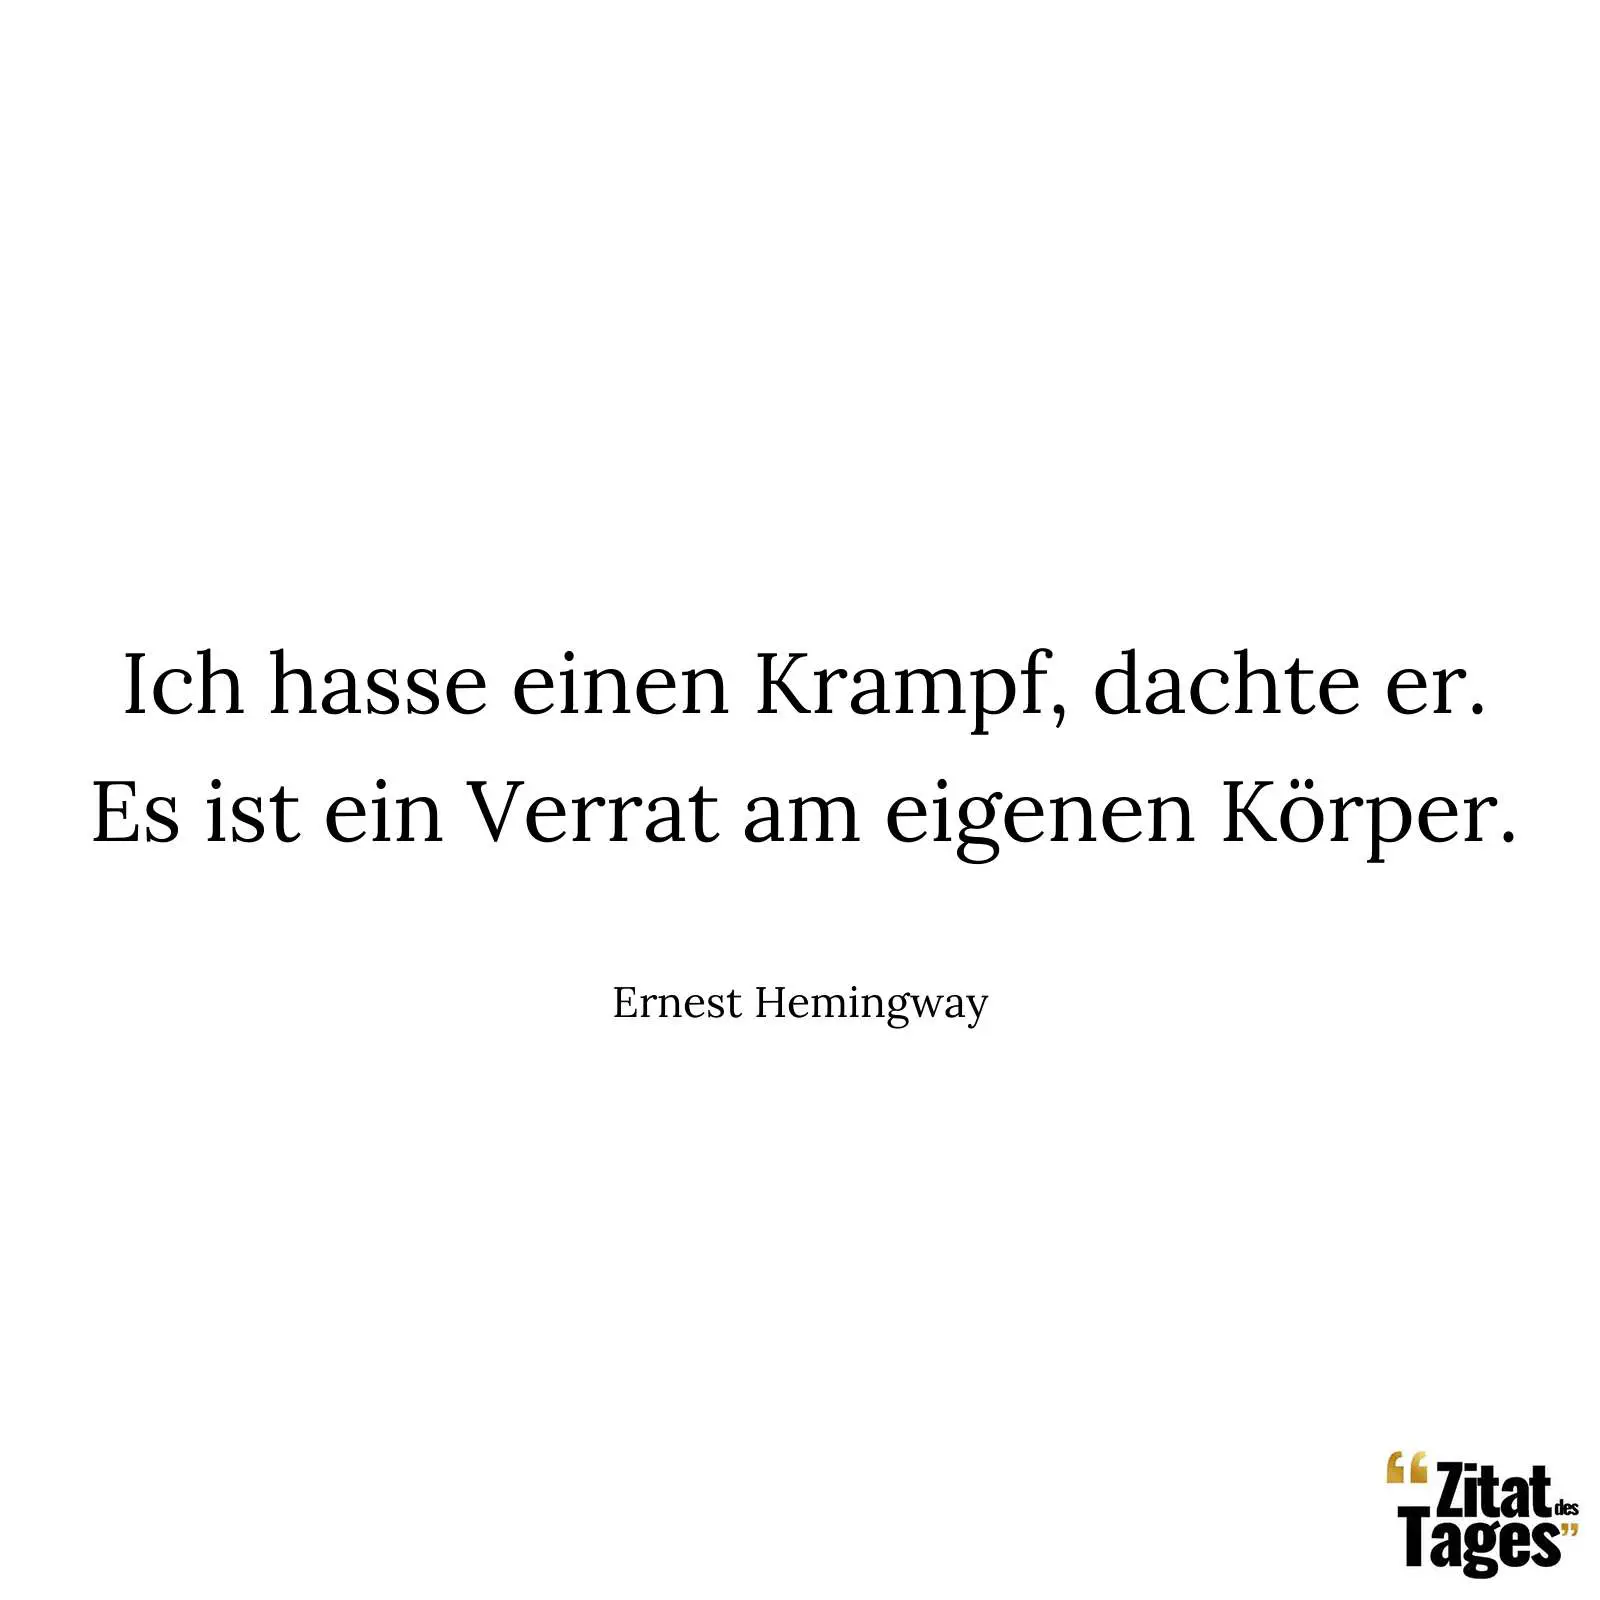 Ich hasse einen Krampf, dachte er. Es ist ein Verrat am eigenen Körper. - Ernest Hemingway